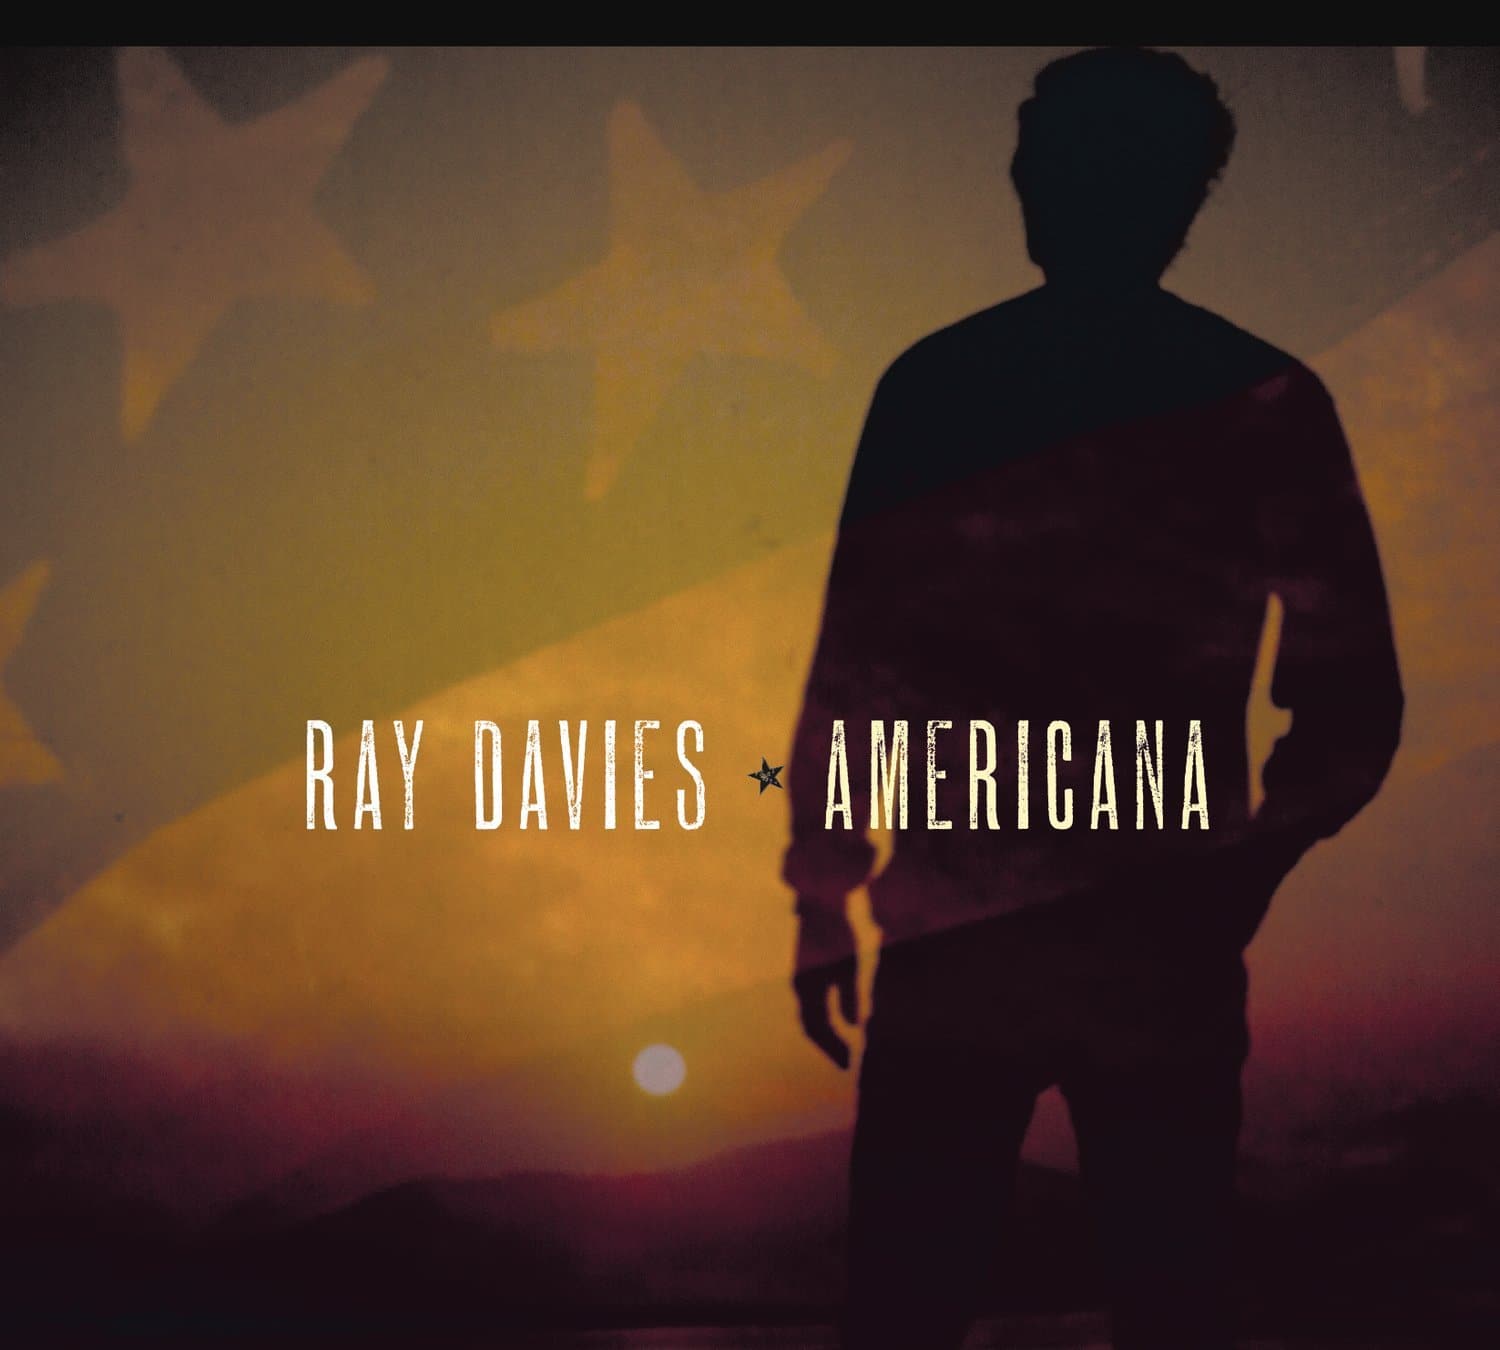 Ray Davies: Americana